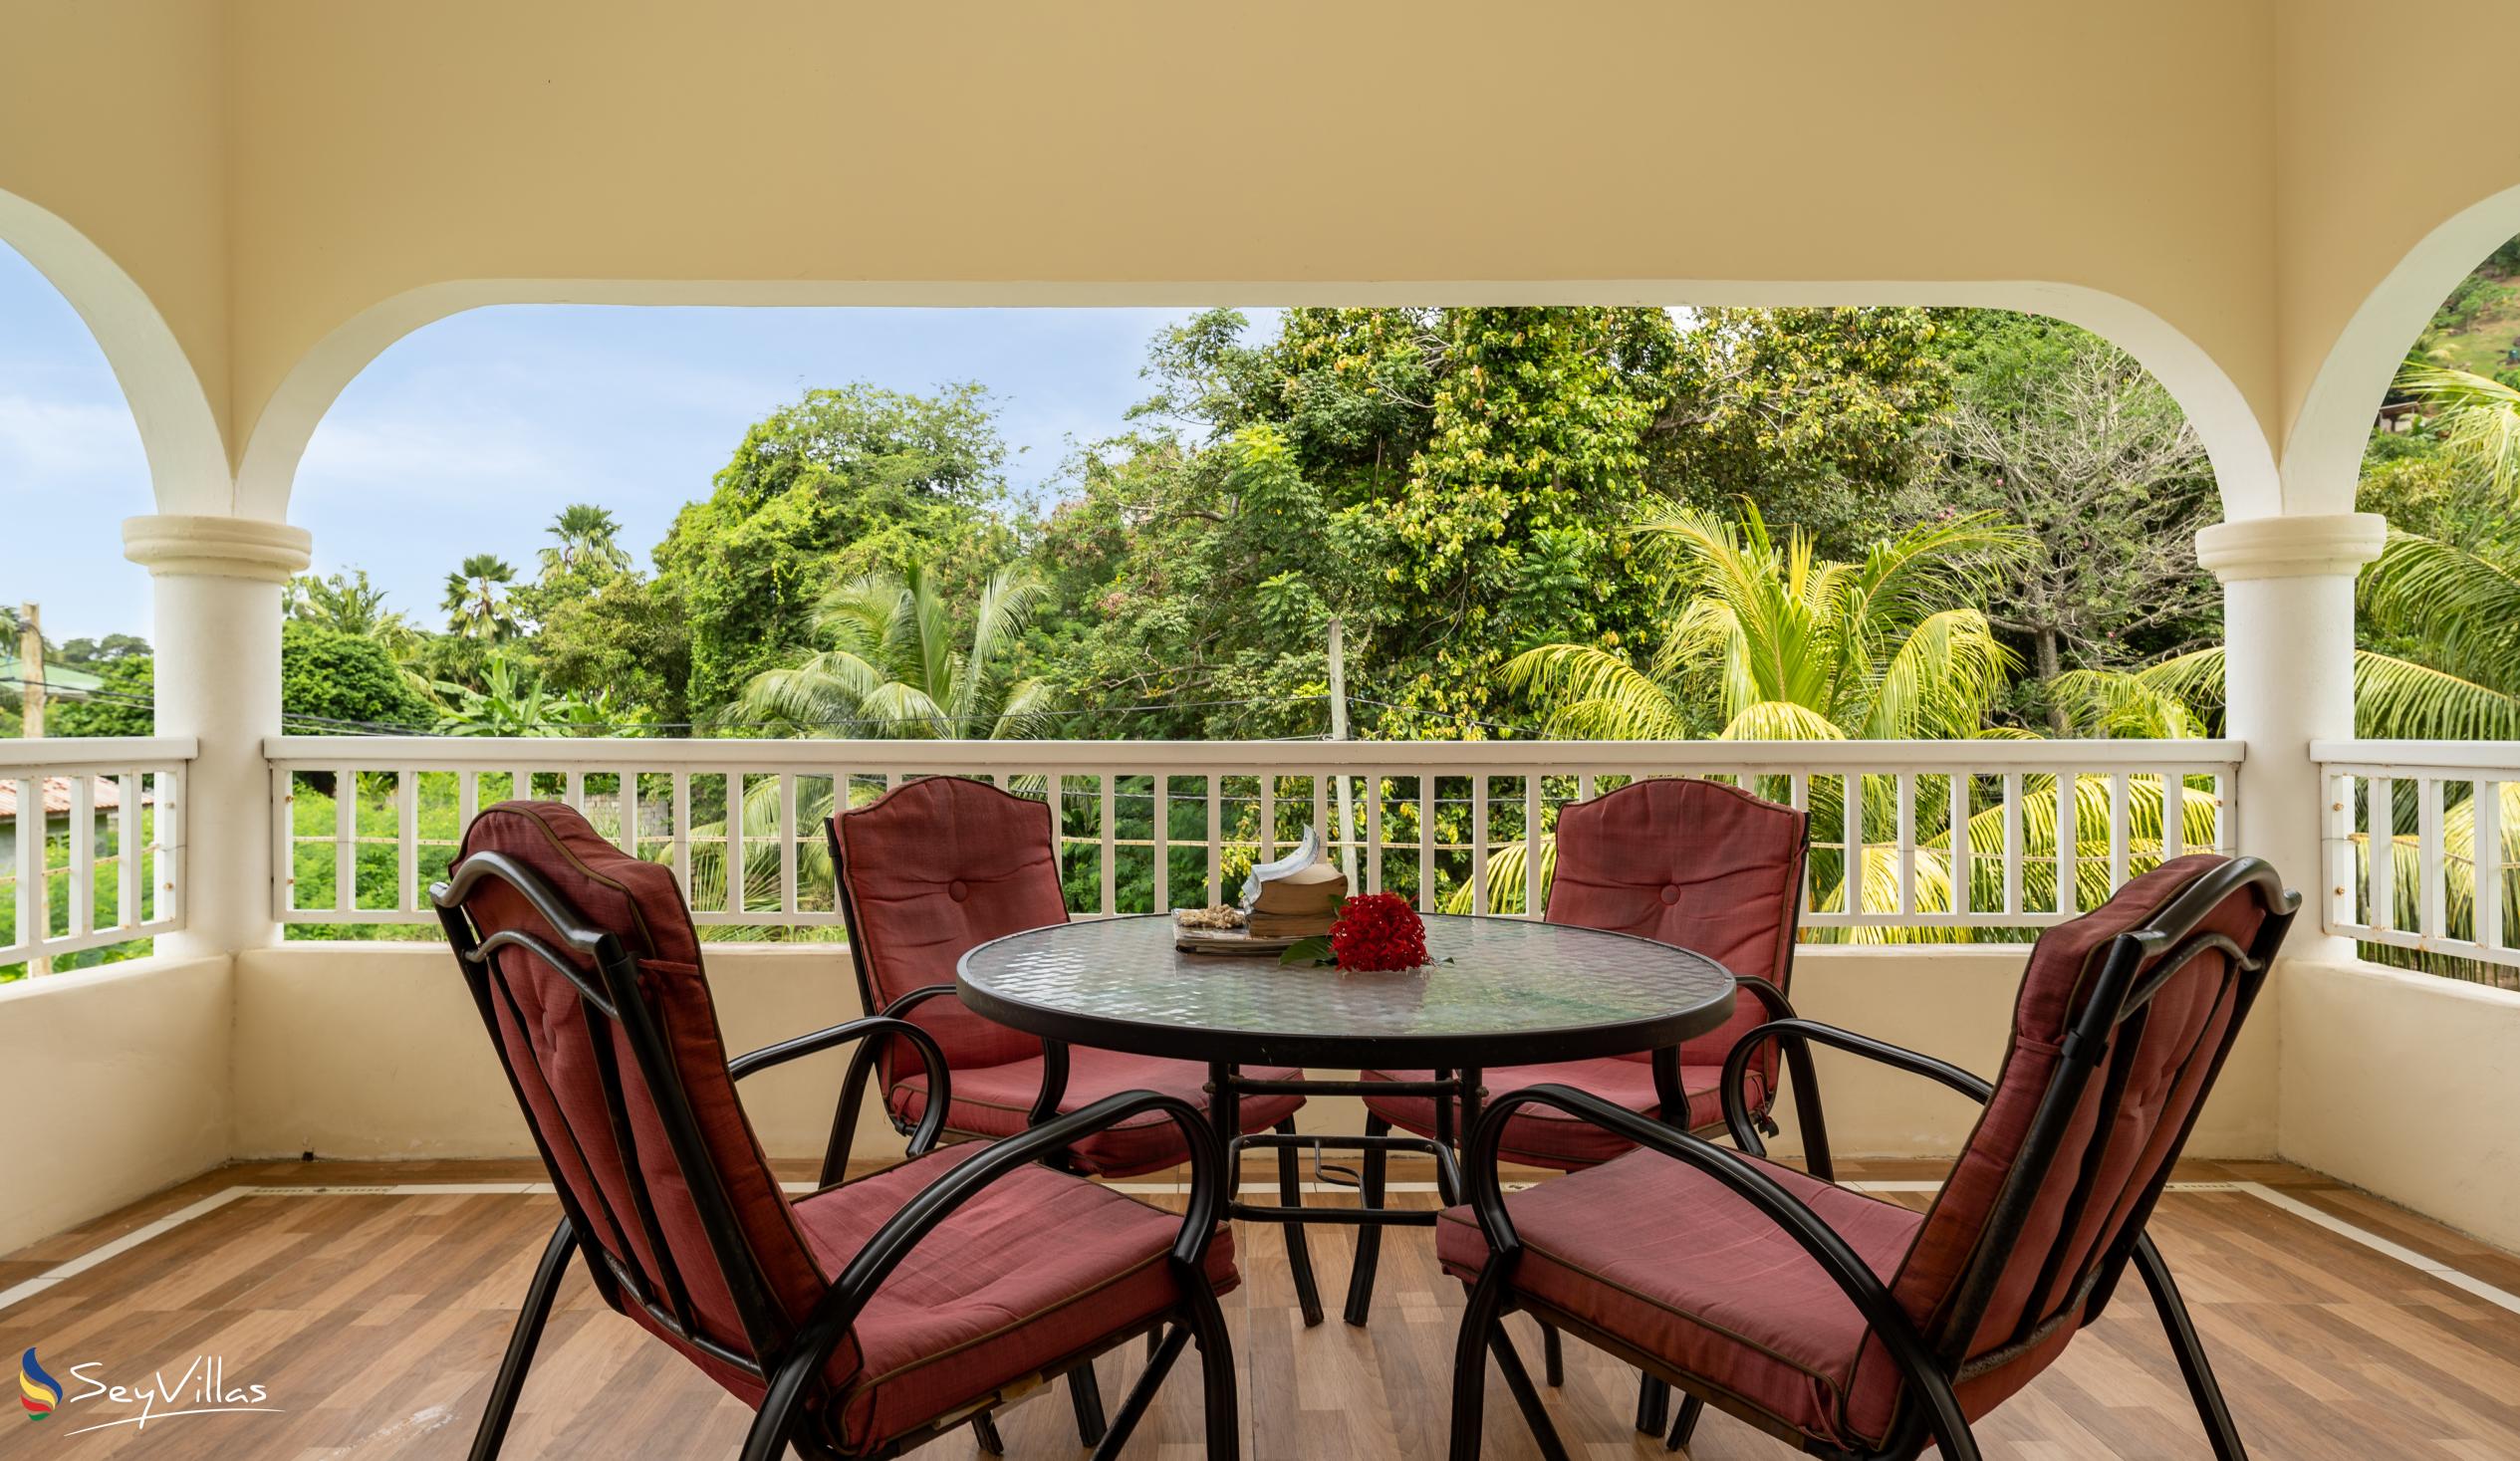 Foto 48: Julie's Holiday Home - Chambre double avec vue sur le jardin - Mahé (Seychelles)